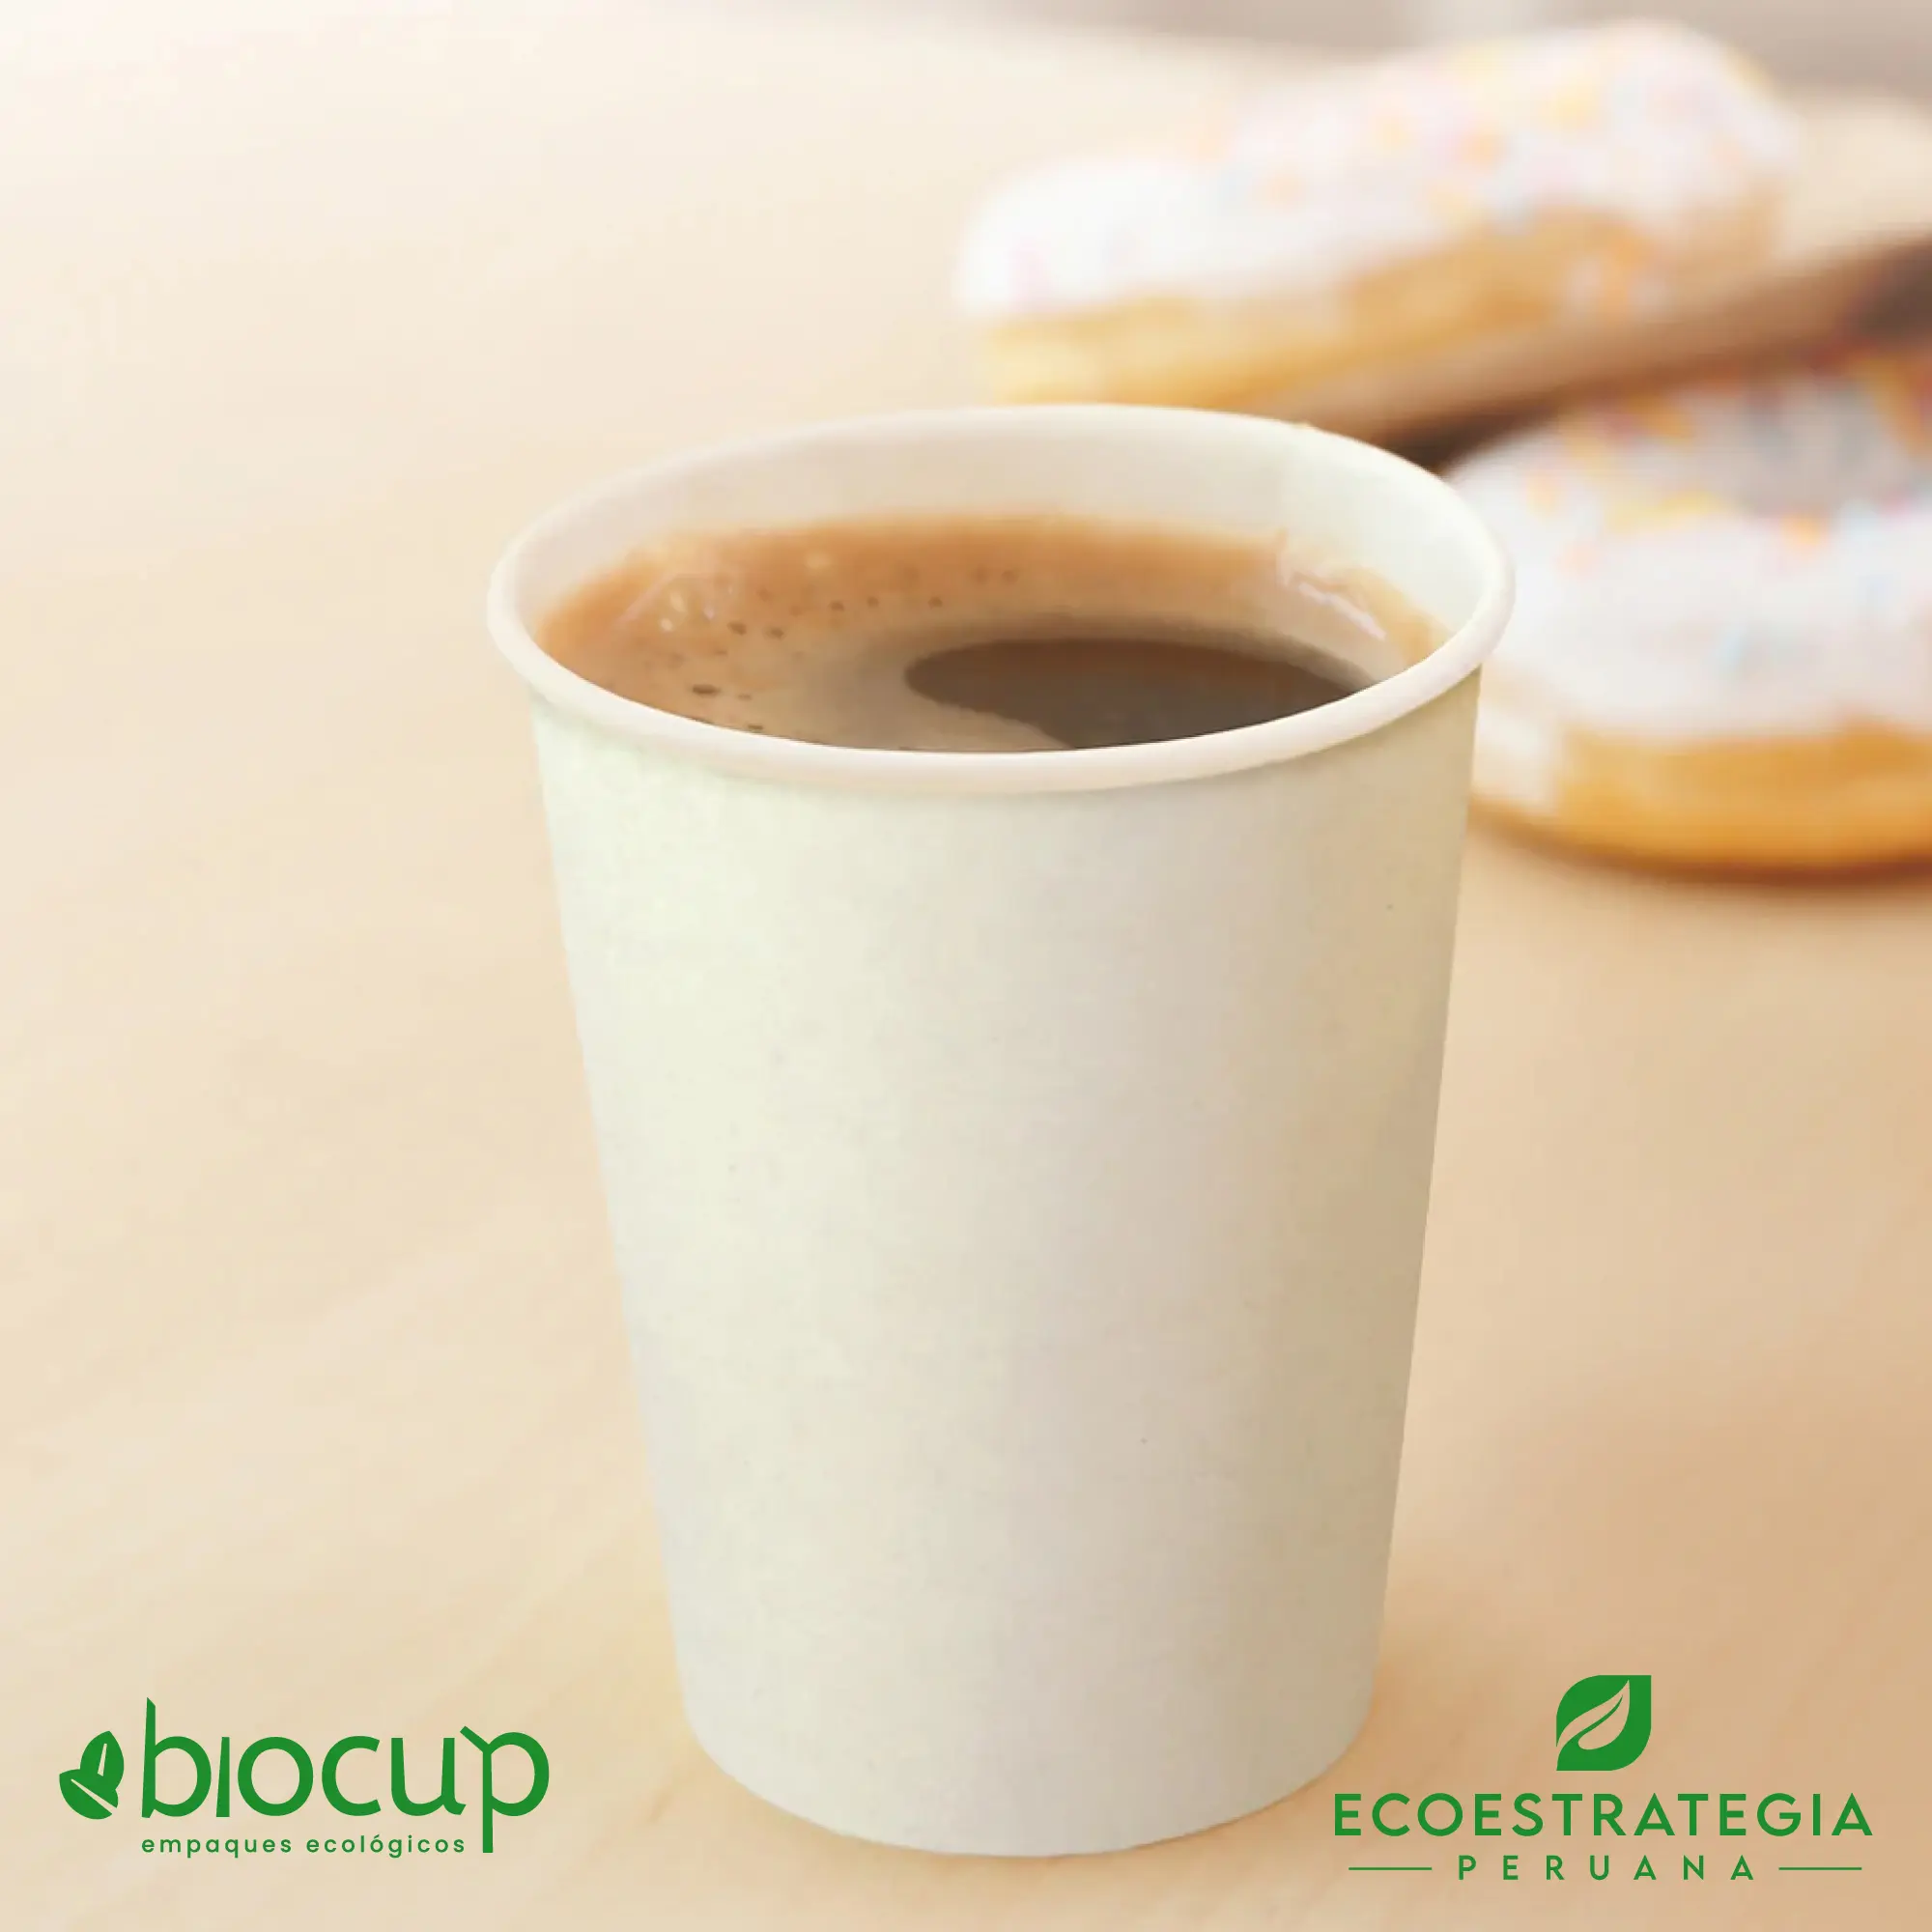 Este vaso de 10 oz es un producto de materiales biodegradables y compostables, hecho a base de fibra de bambú. Cotiza tus vasos para bebidas frias o calientes